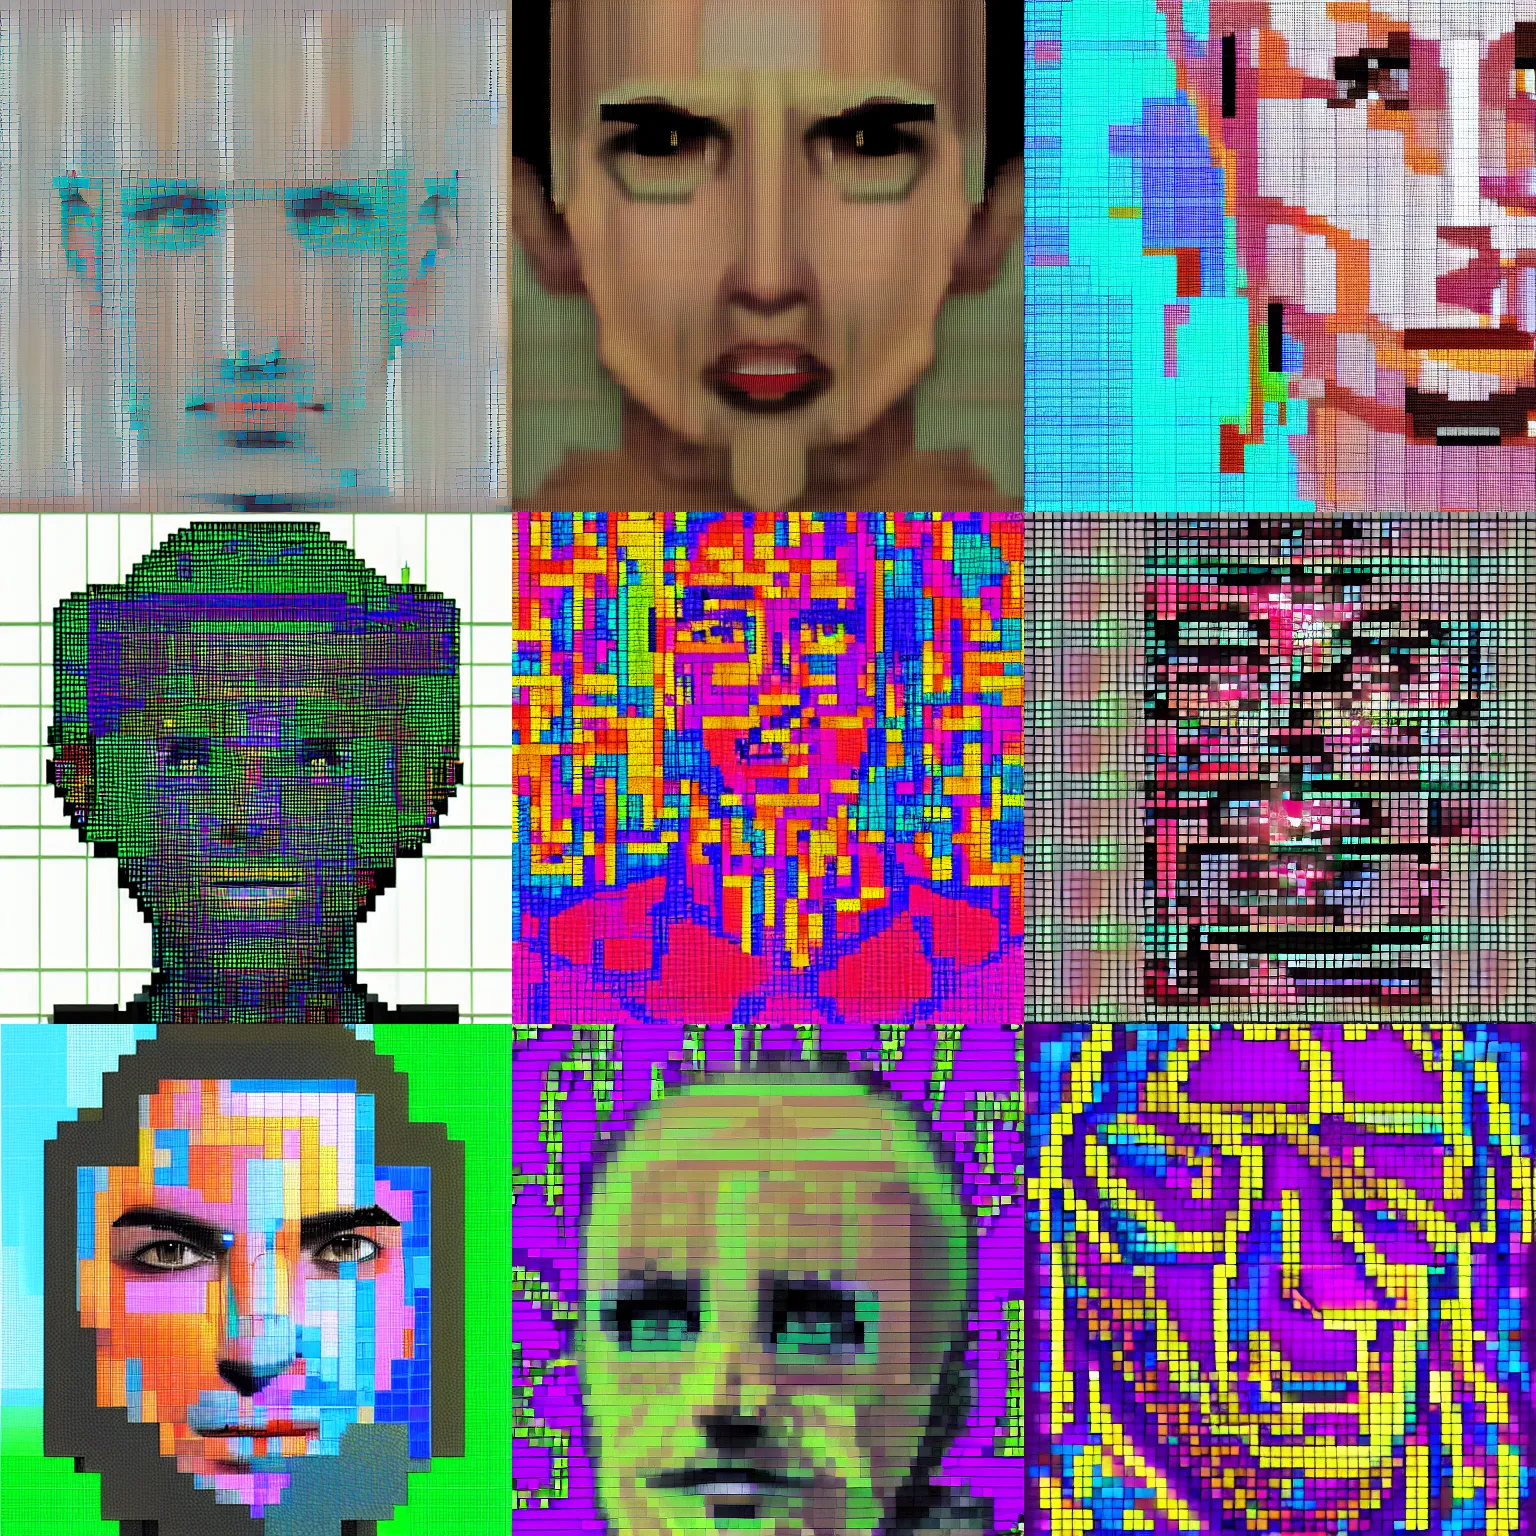 Pixel art portrait of Collection